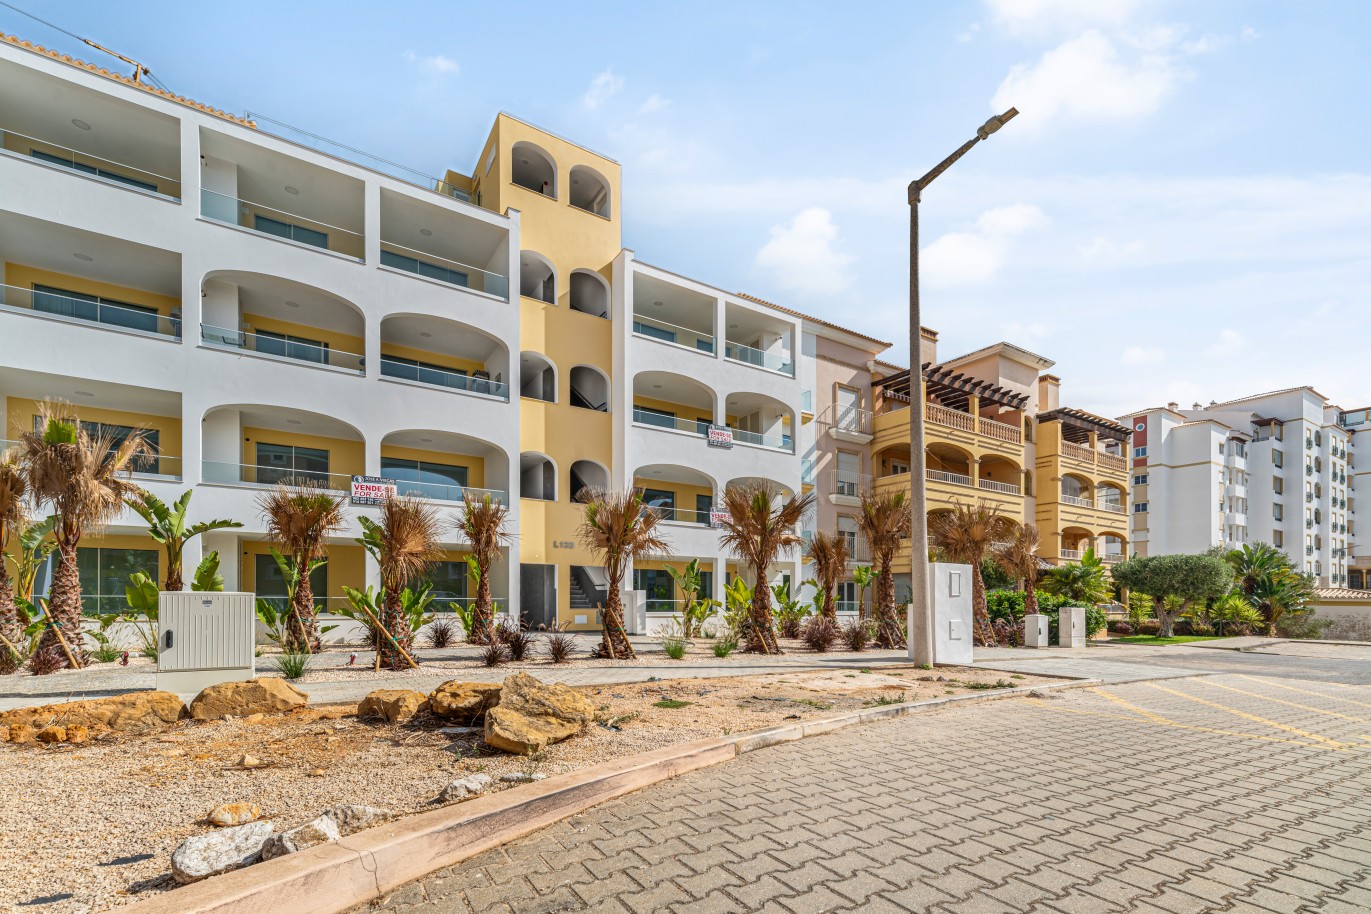 Verkauf einer Wohnung im Bau, mit Terrasse, Lagos, Algarve, Portugal_238182